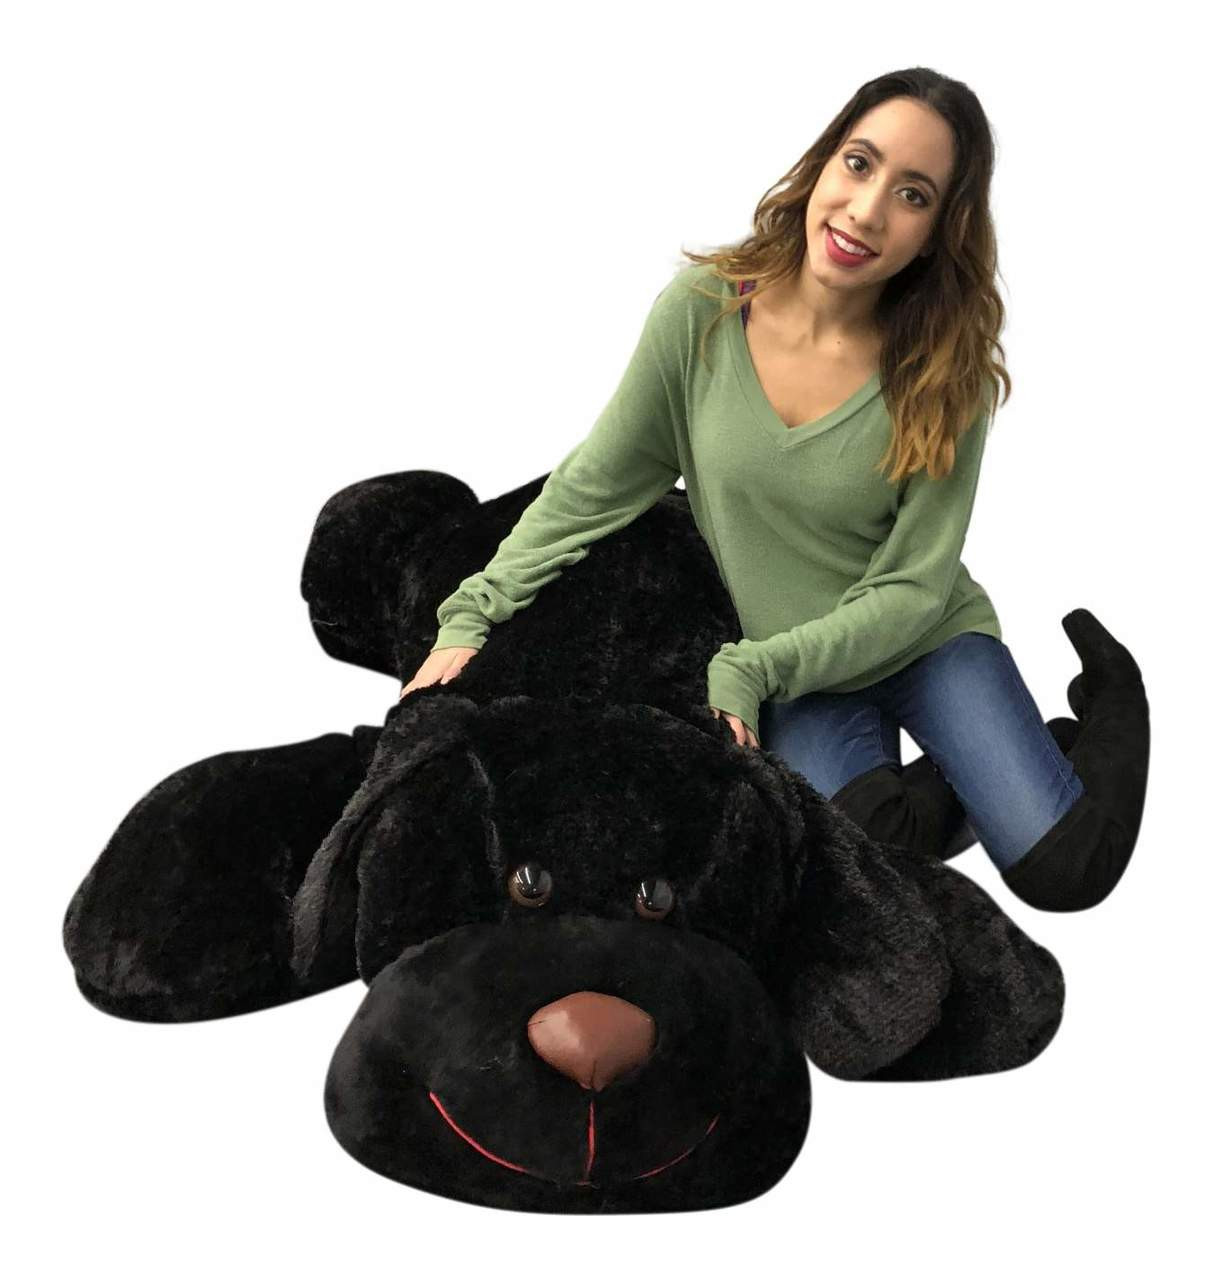 giant stuffed dog